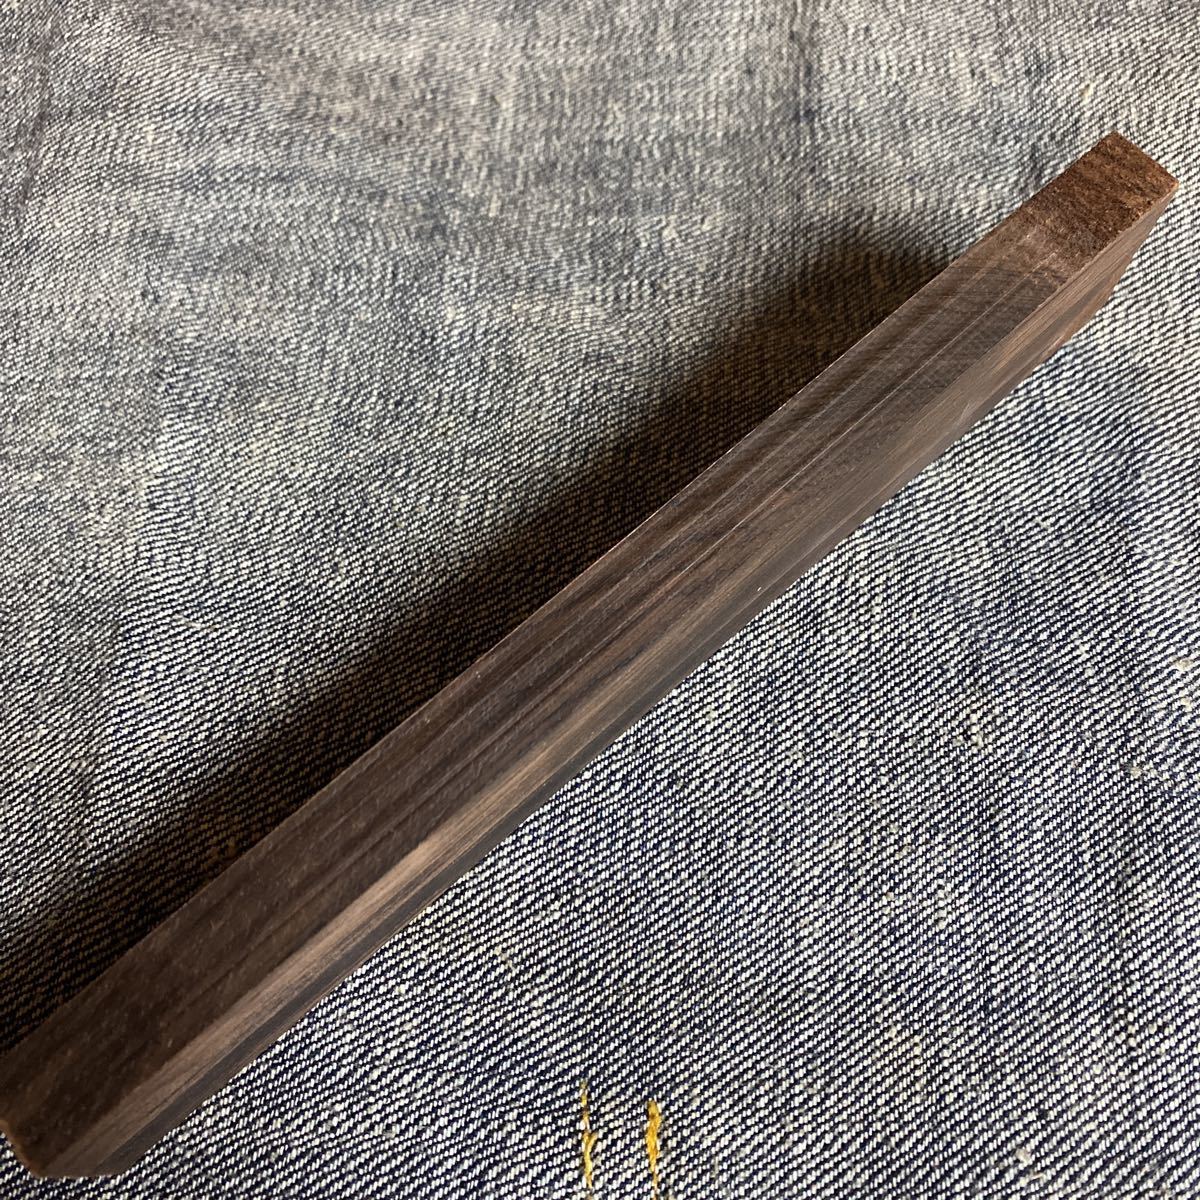 b radio-controller Lien rose wood is ka Ran da good quality material Bridge 19.5cm×3.2cm thickness 13mm guitar material pen block 